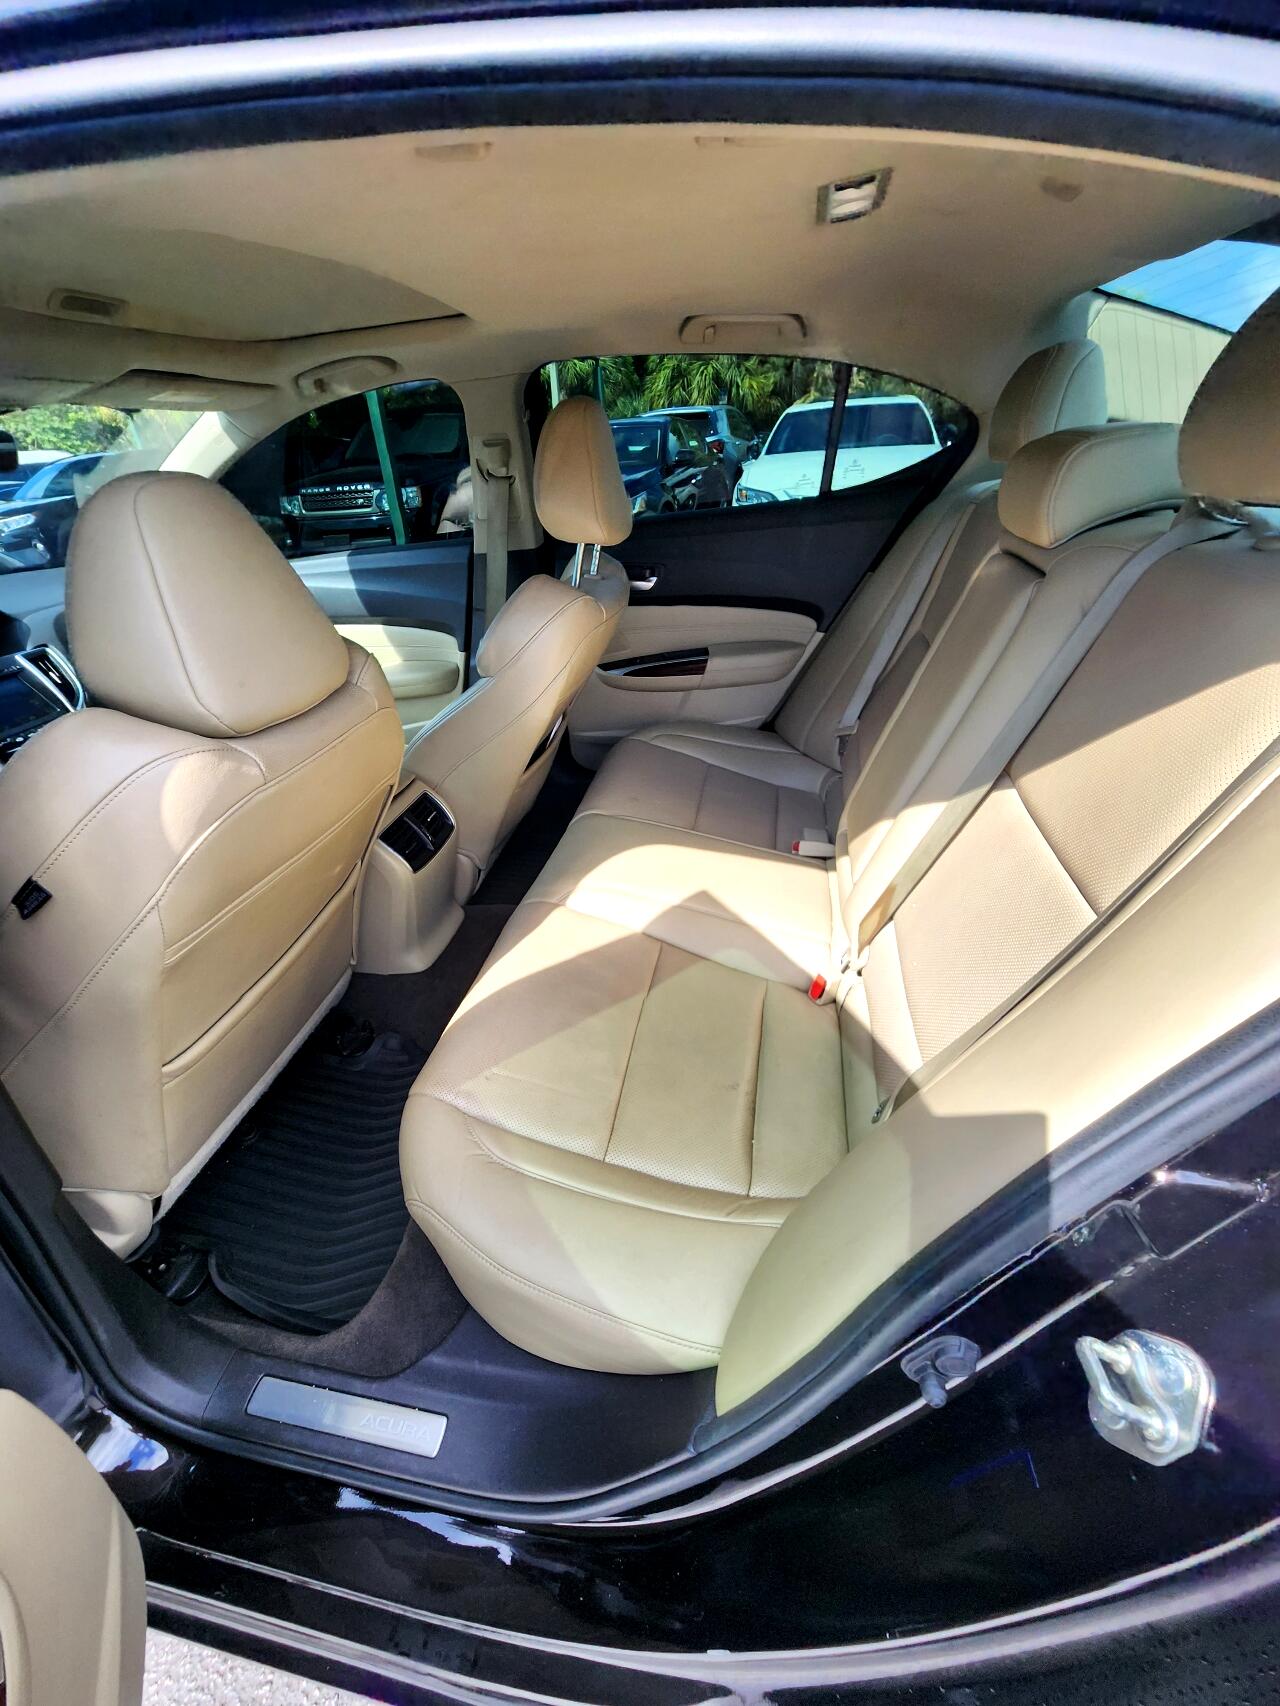 2015 ACURA TLX Sedan - $13,999